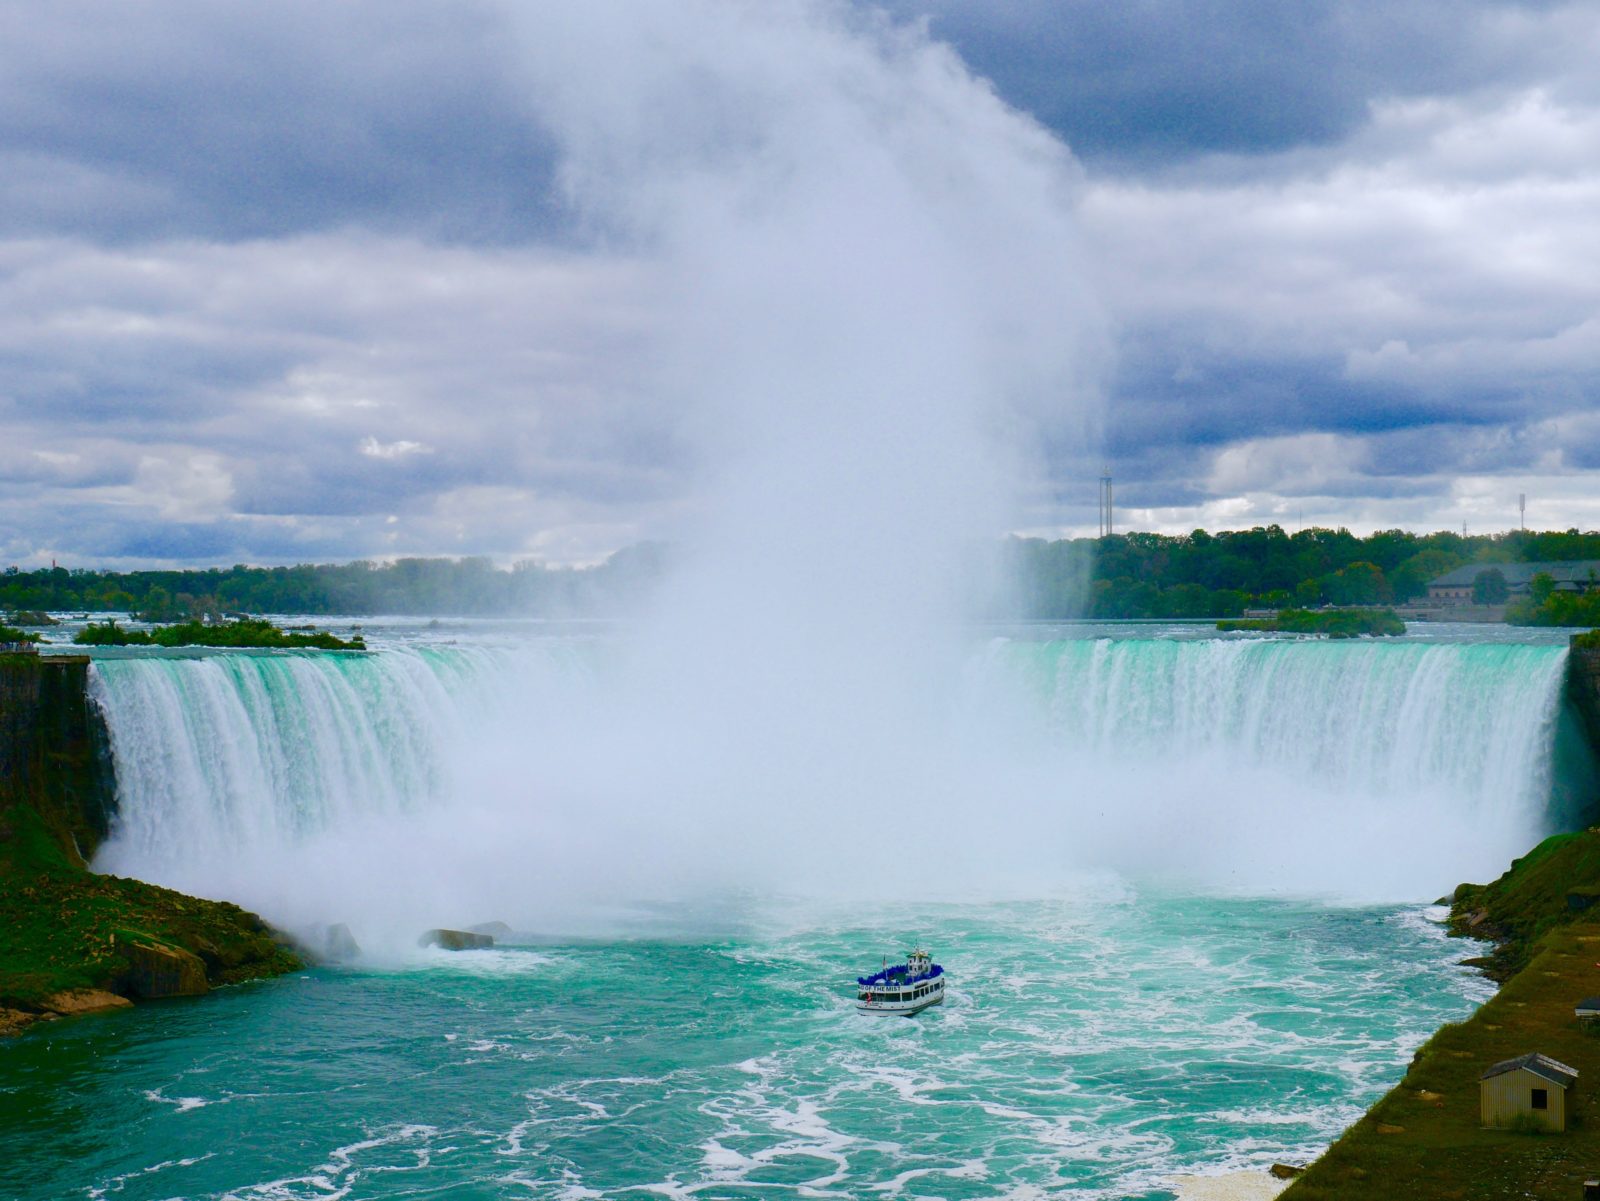 So touristisch sind die Niagara Fälle Kanada. Von Toronto zu den Niagara Fällen.